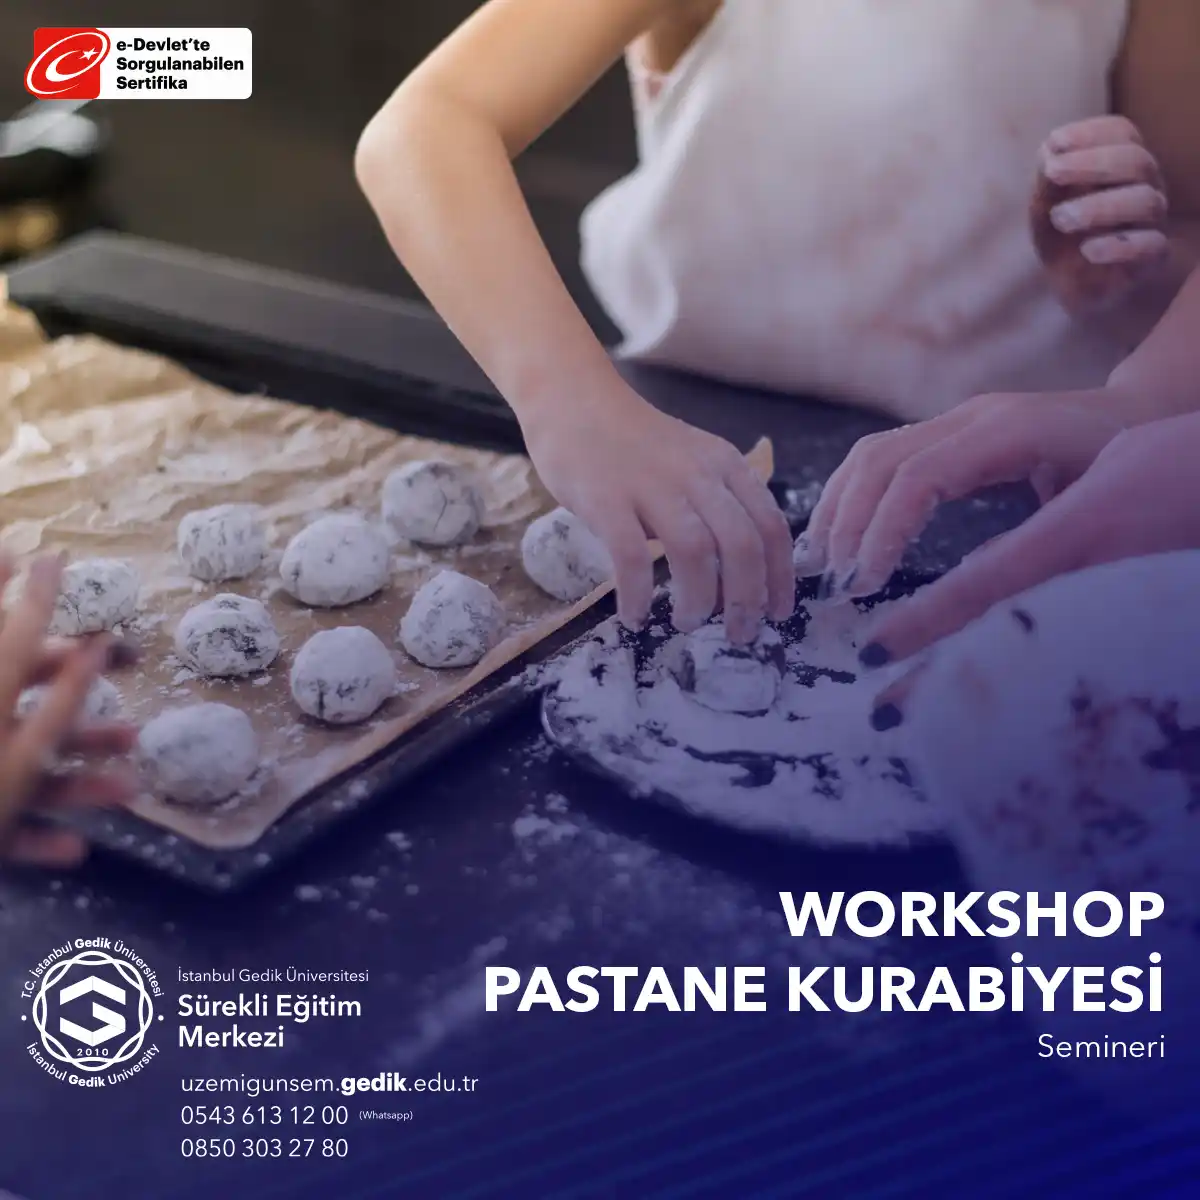  Bu seminer, katılımcılara pastane kurabiyesi yapma sürecini öğretir ve sonunda lezzetli kurabiyelerin tadına bakabilme fırsatı sunar. 